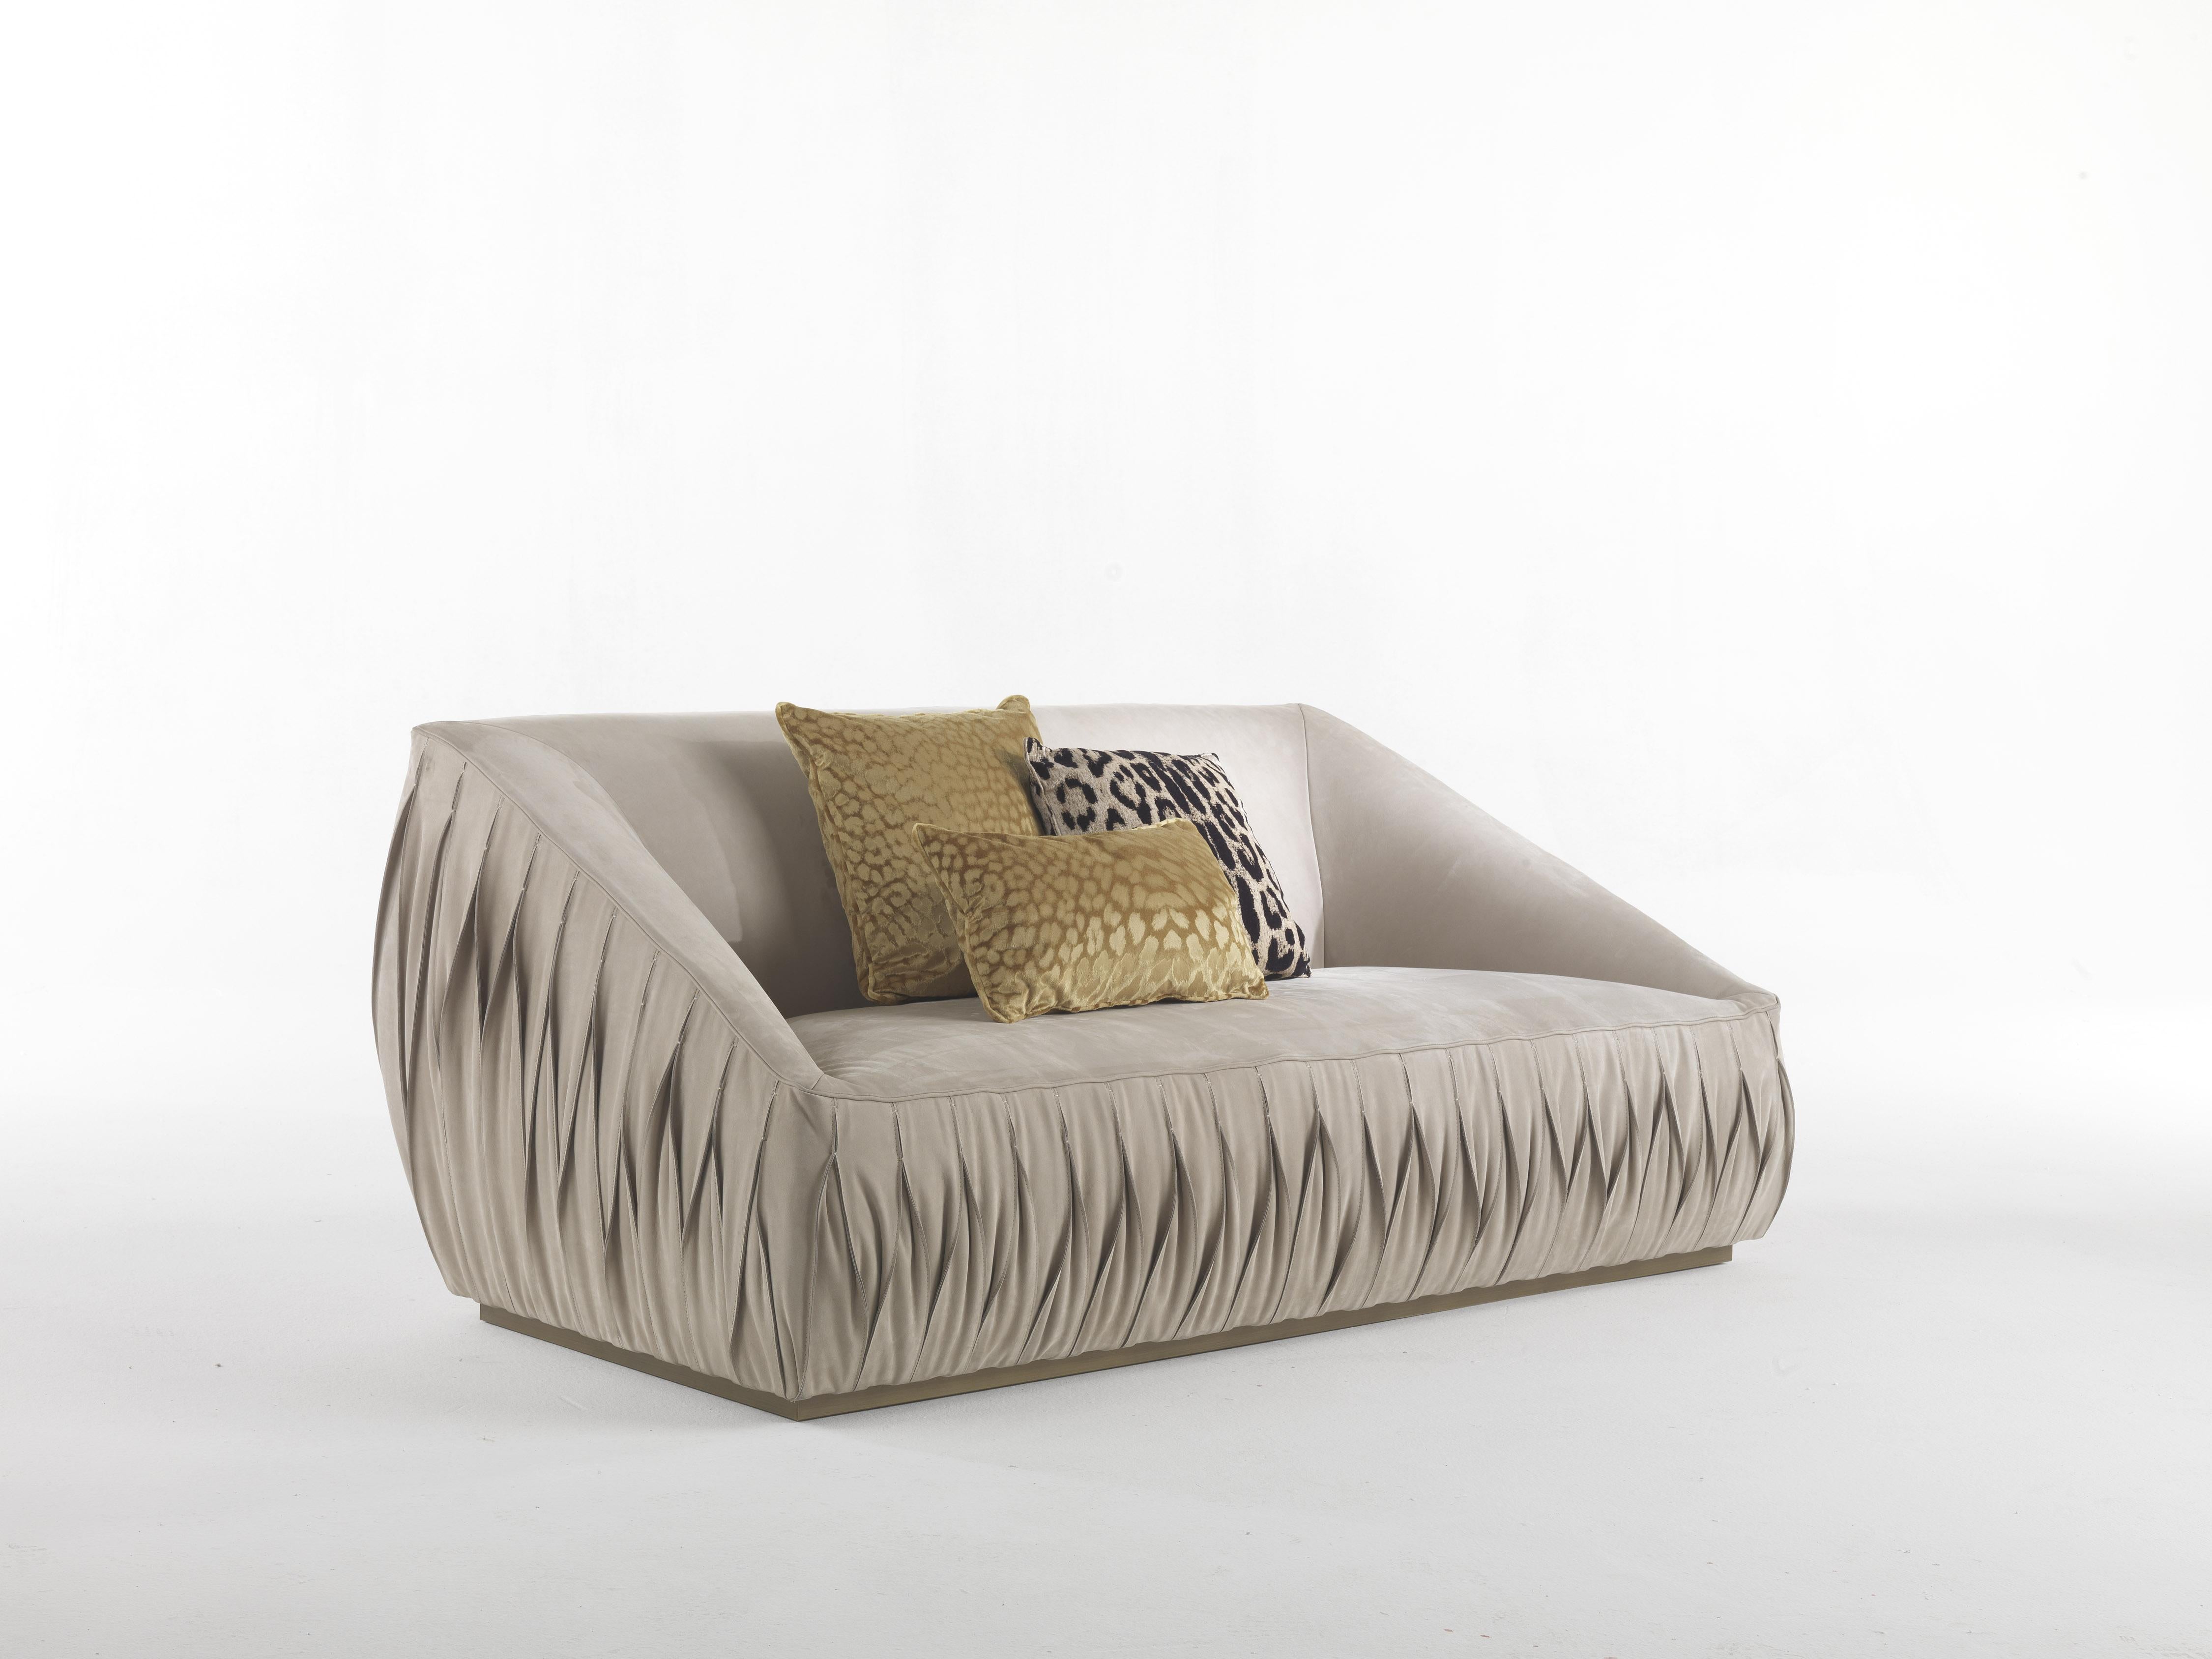 Das Sofa ist von den informellen Linien der 1970er Jahre inspiriert; die Hüften sind durch eine spezielle Faltenhautverarbeitung gekennzeichnet.
Nest 2-Sitzer Sofa Struktur aus Pappelholz und Schaumstoff. Polsterung in Leder CAT.B Nabuk COL. Nuss.